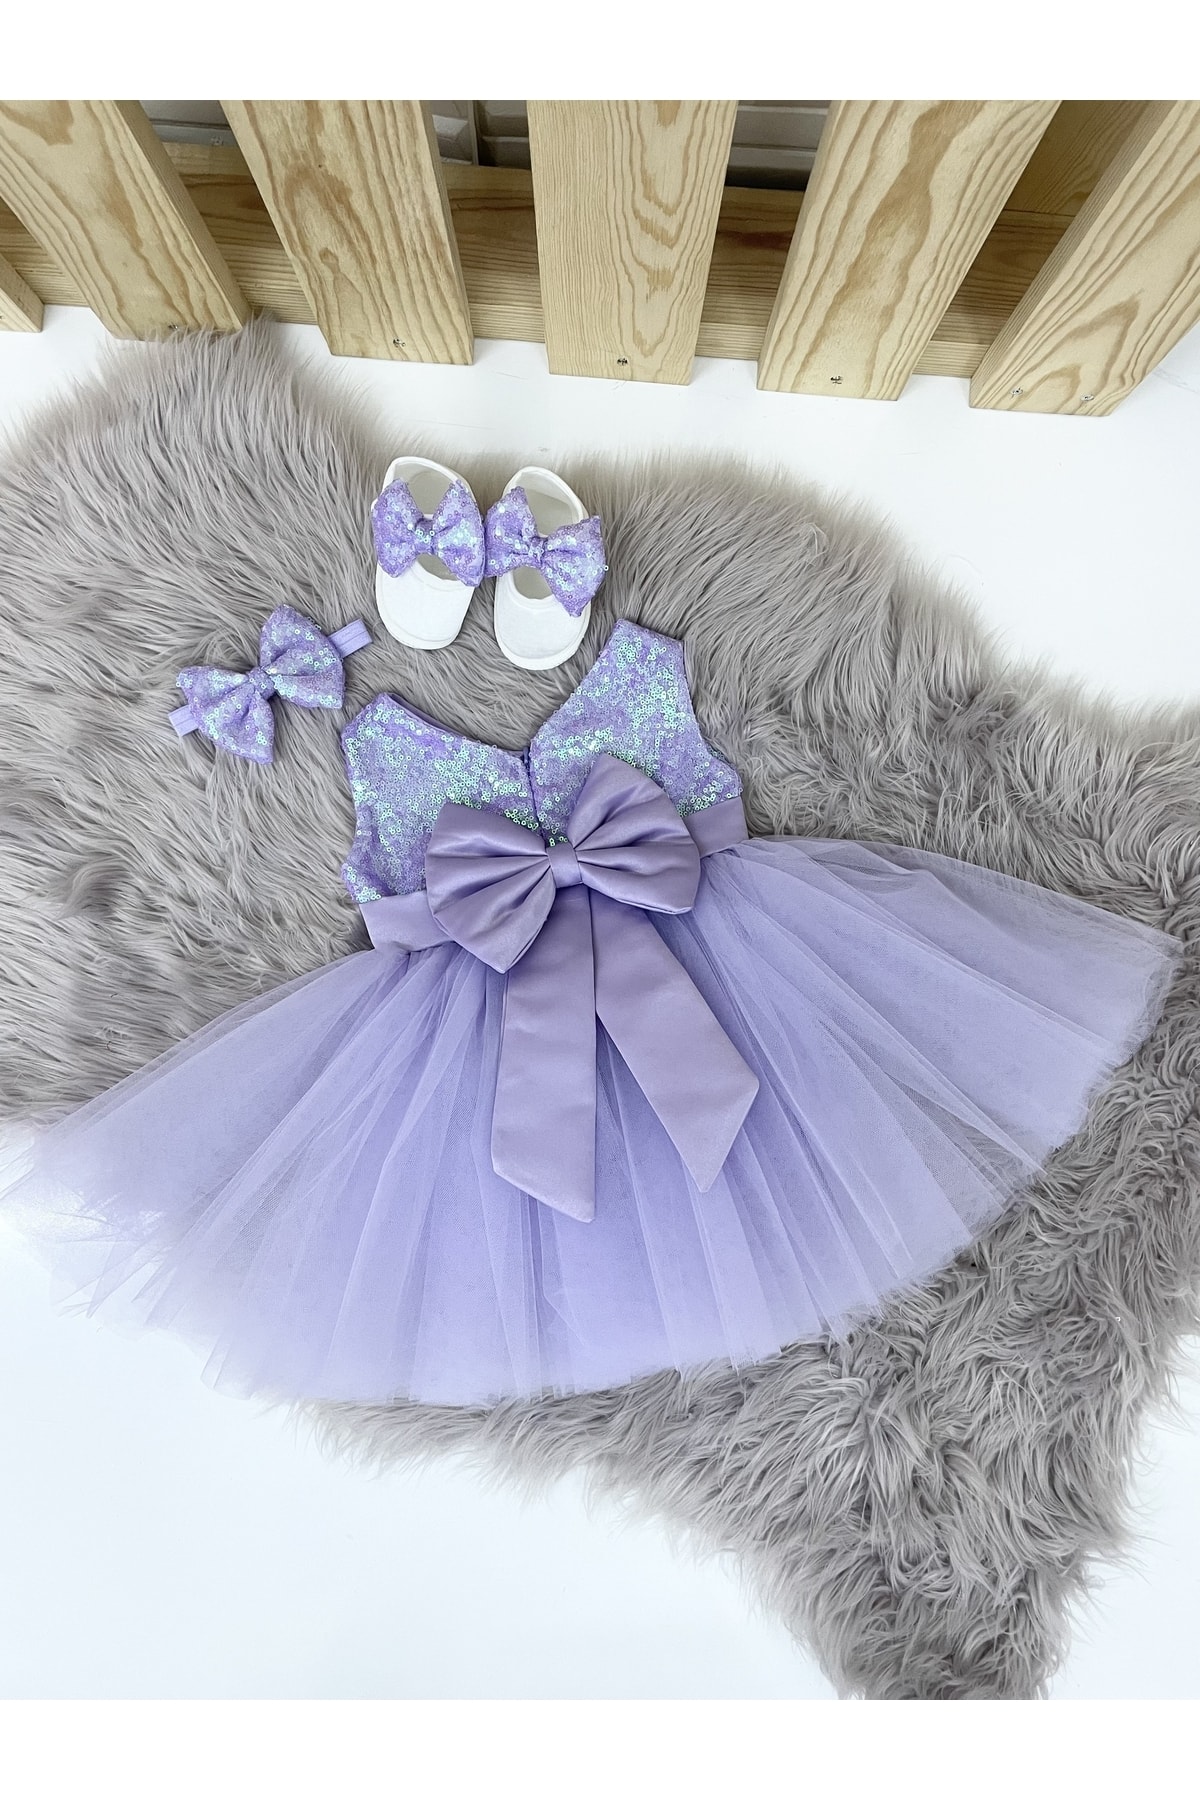 Almira Tasarım Lila Payetli Bebek Doğum Günü Elbisesi